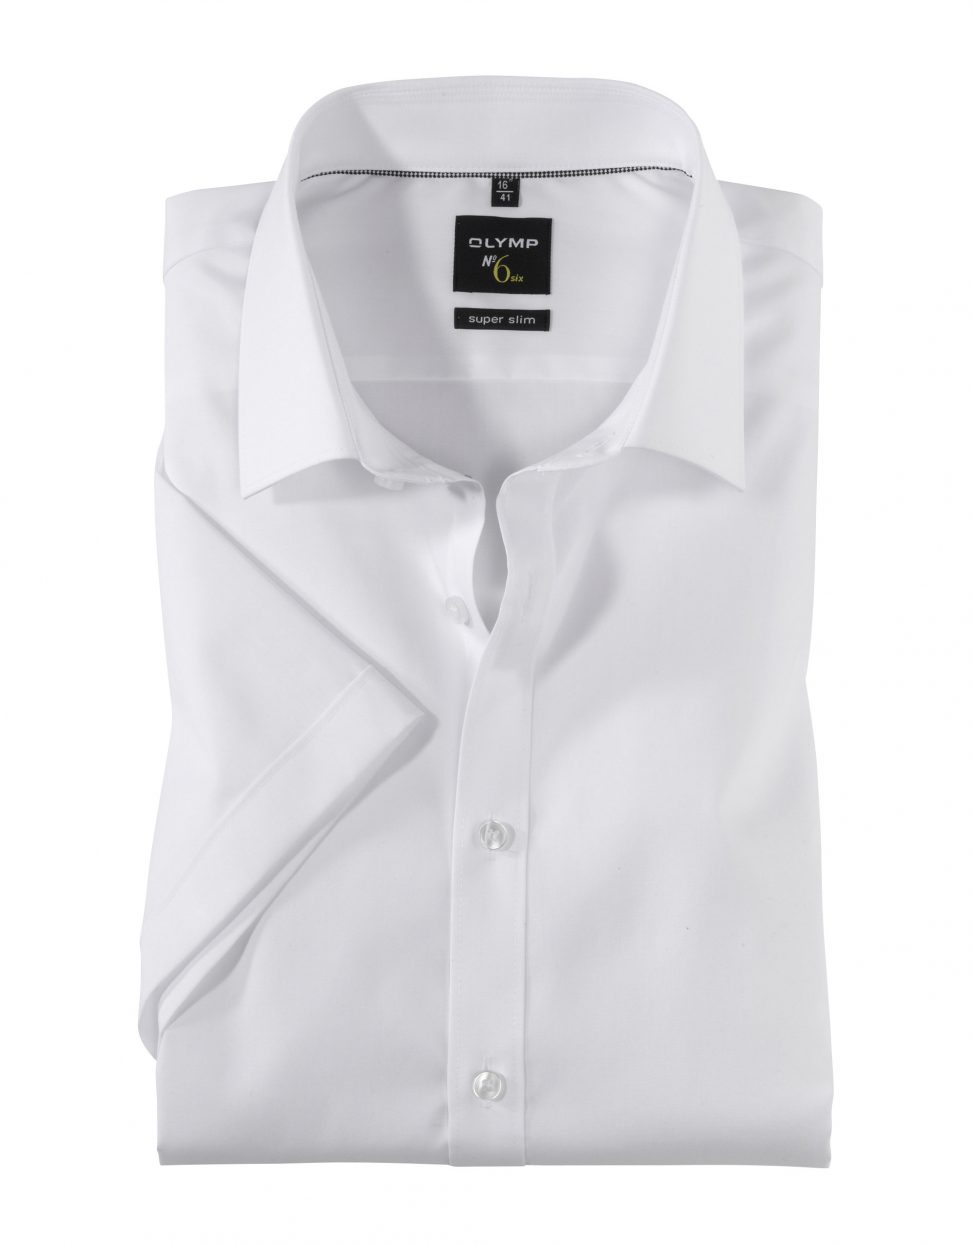 Koszula OLYMP No. Six, super slim Urban Kent ,biała  04661200 krótki rękaw